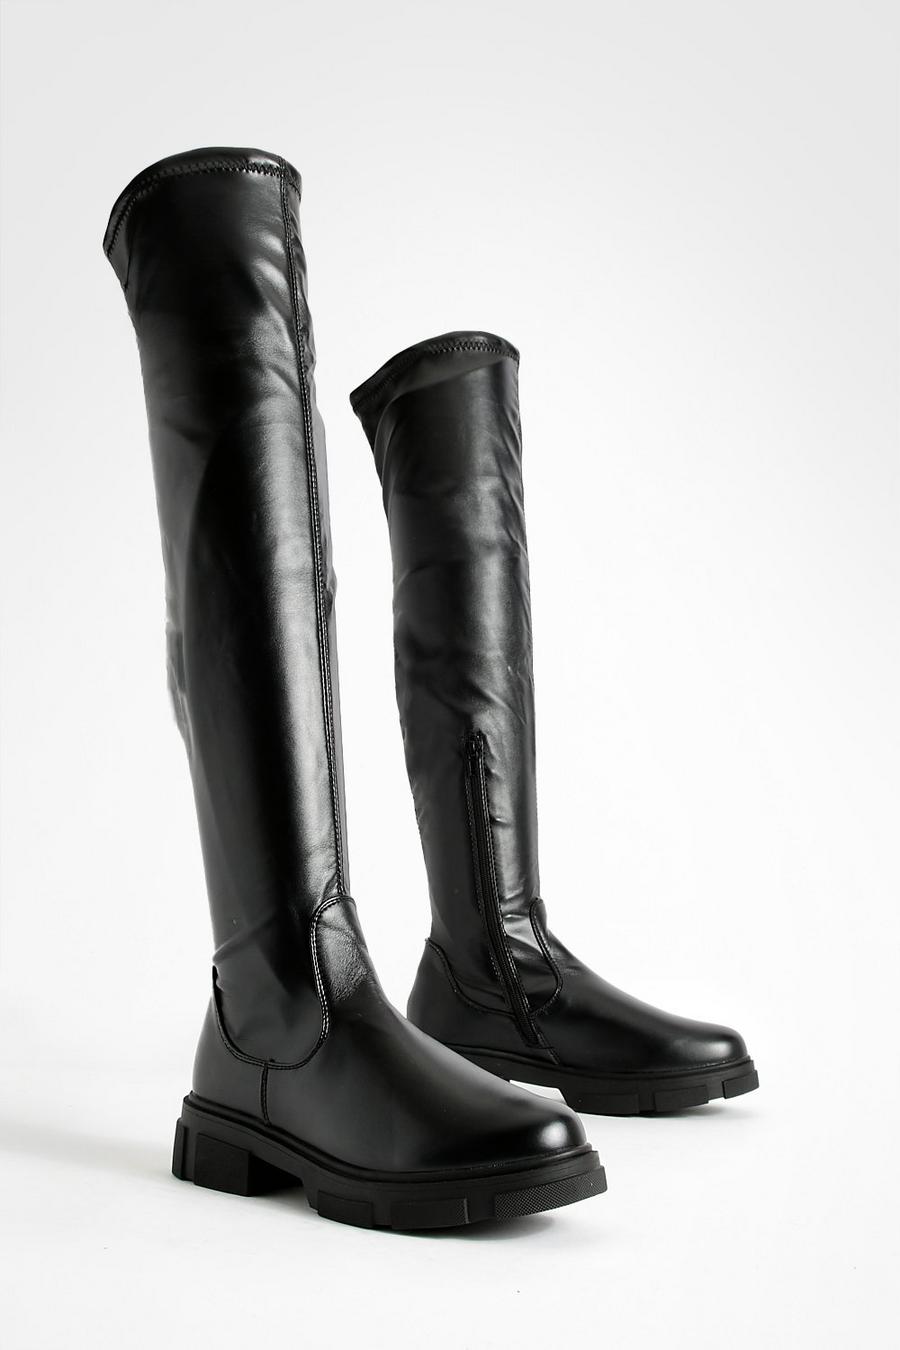 Botas de caña alta elásticas de cuero sintético, Black negro